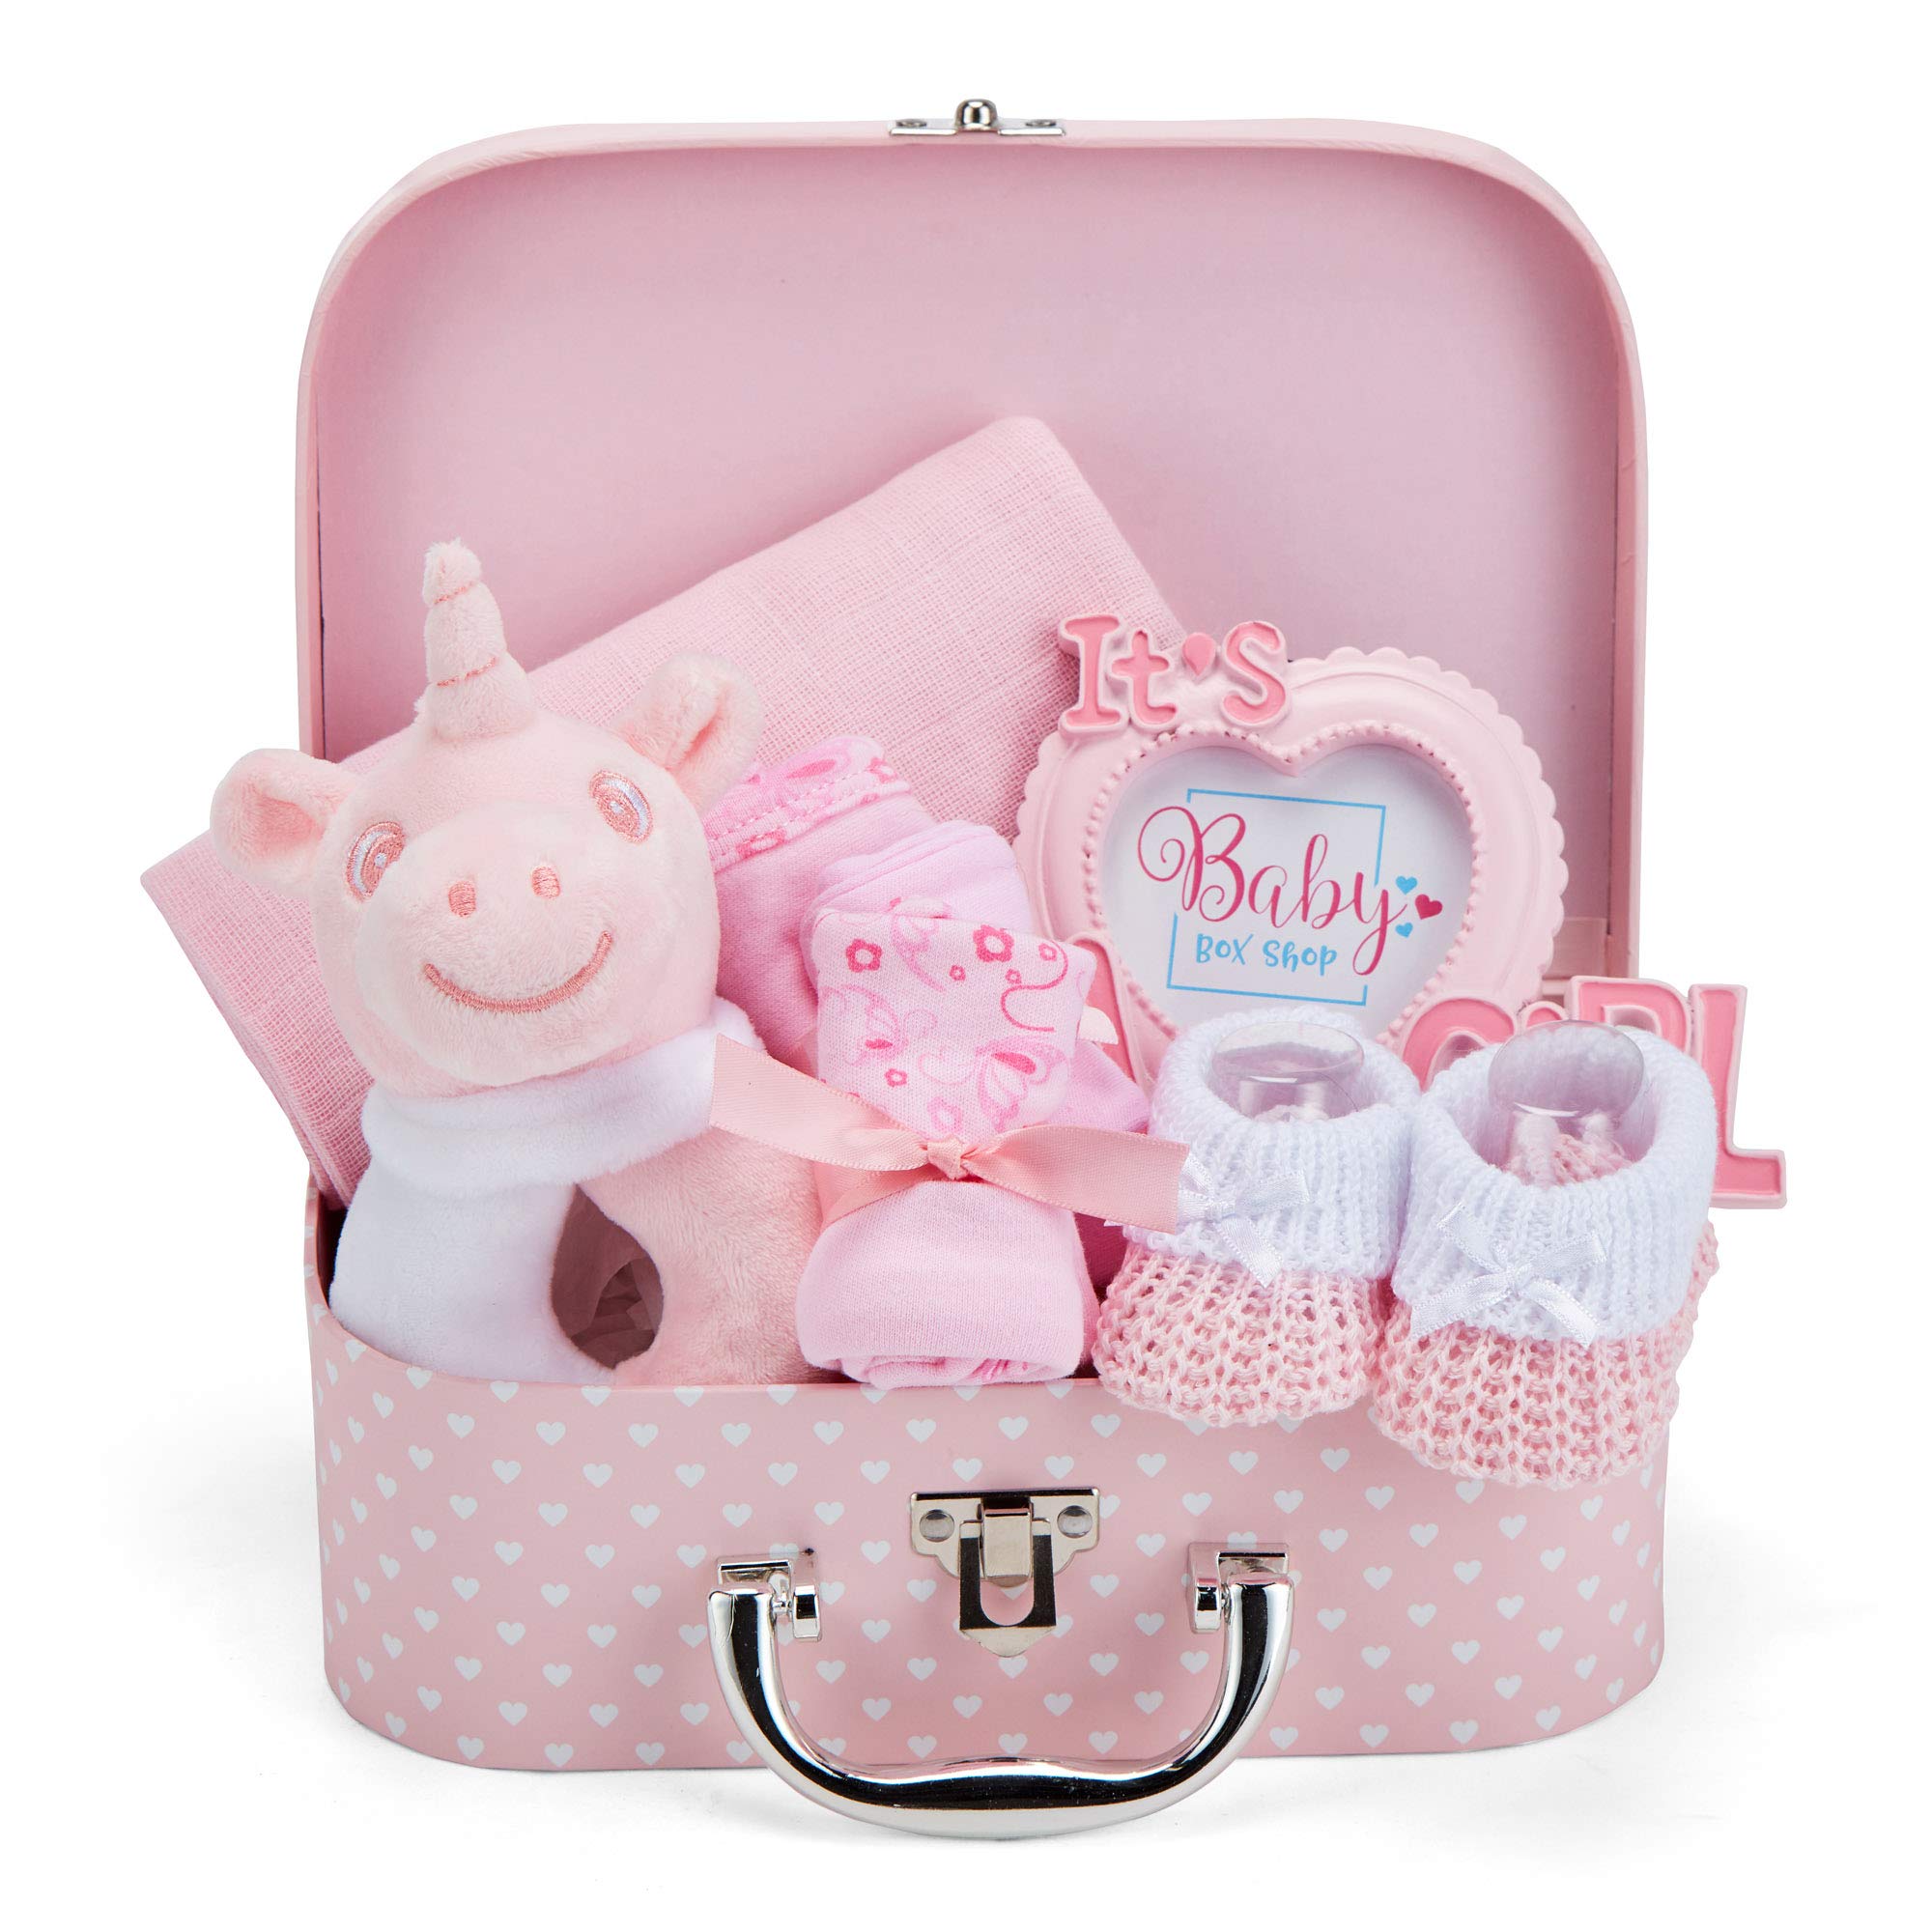 Box Shop Babyparty Mädchen Geschenk - 7 Baby Geschenkset, Für Neugeborenes, Zur Geburt - Rosa,